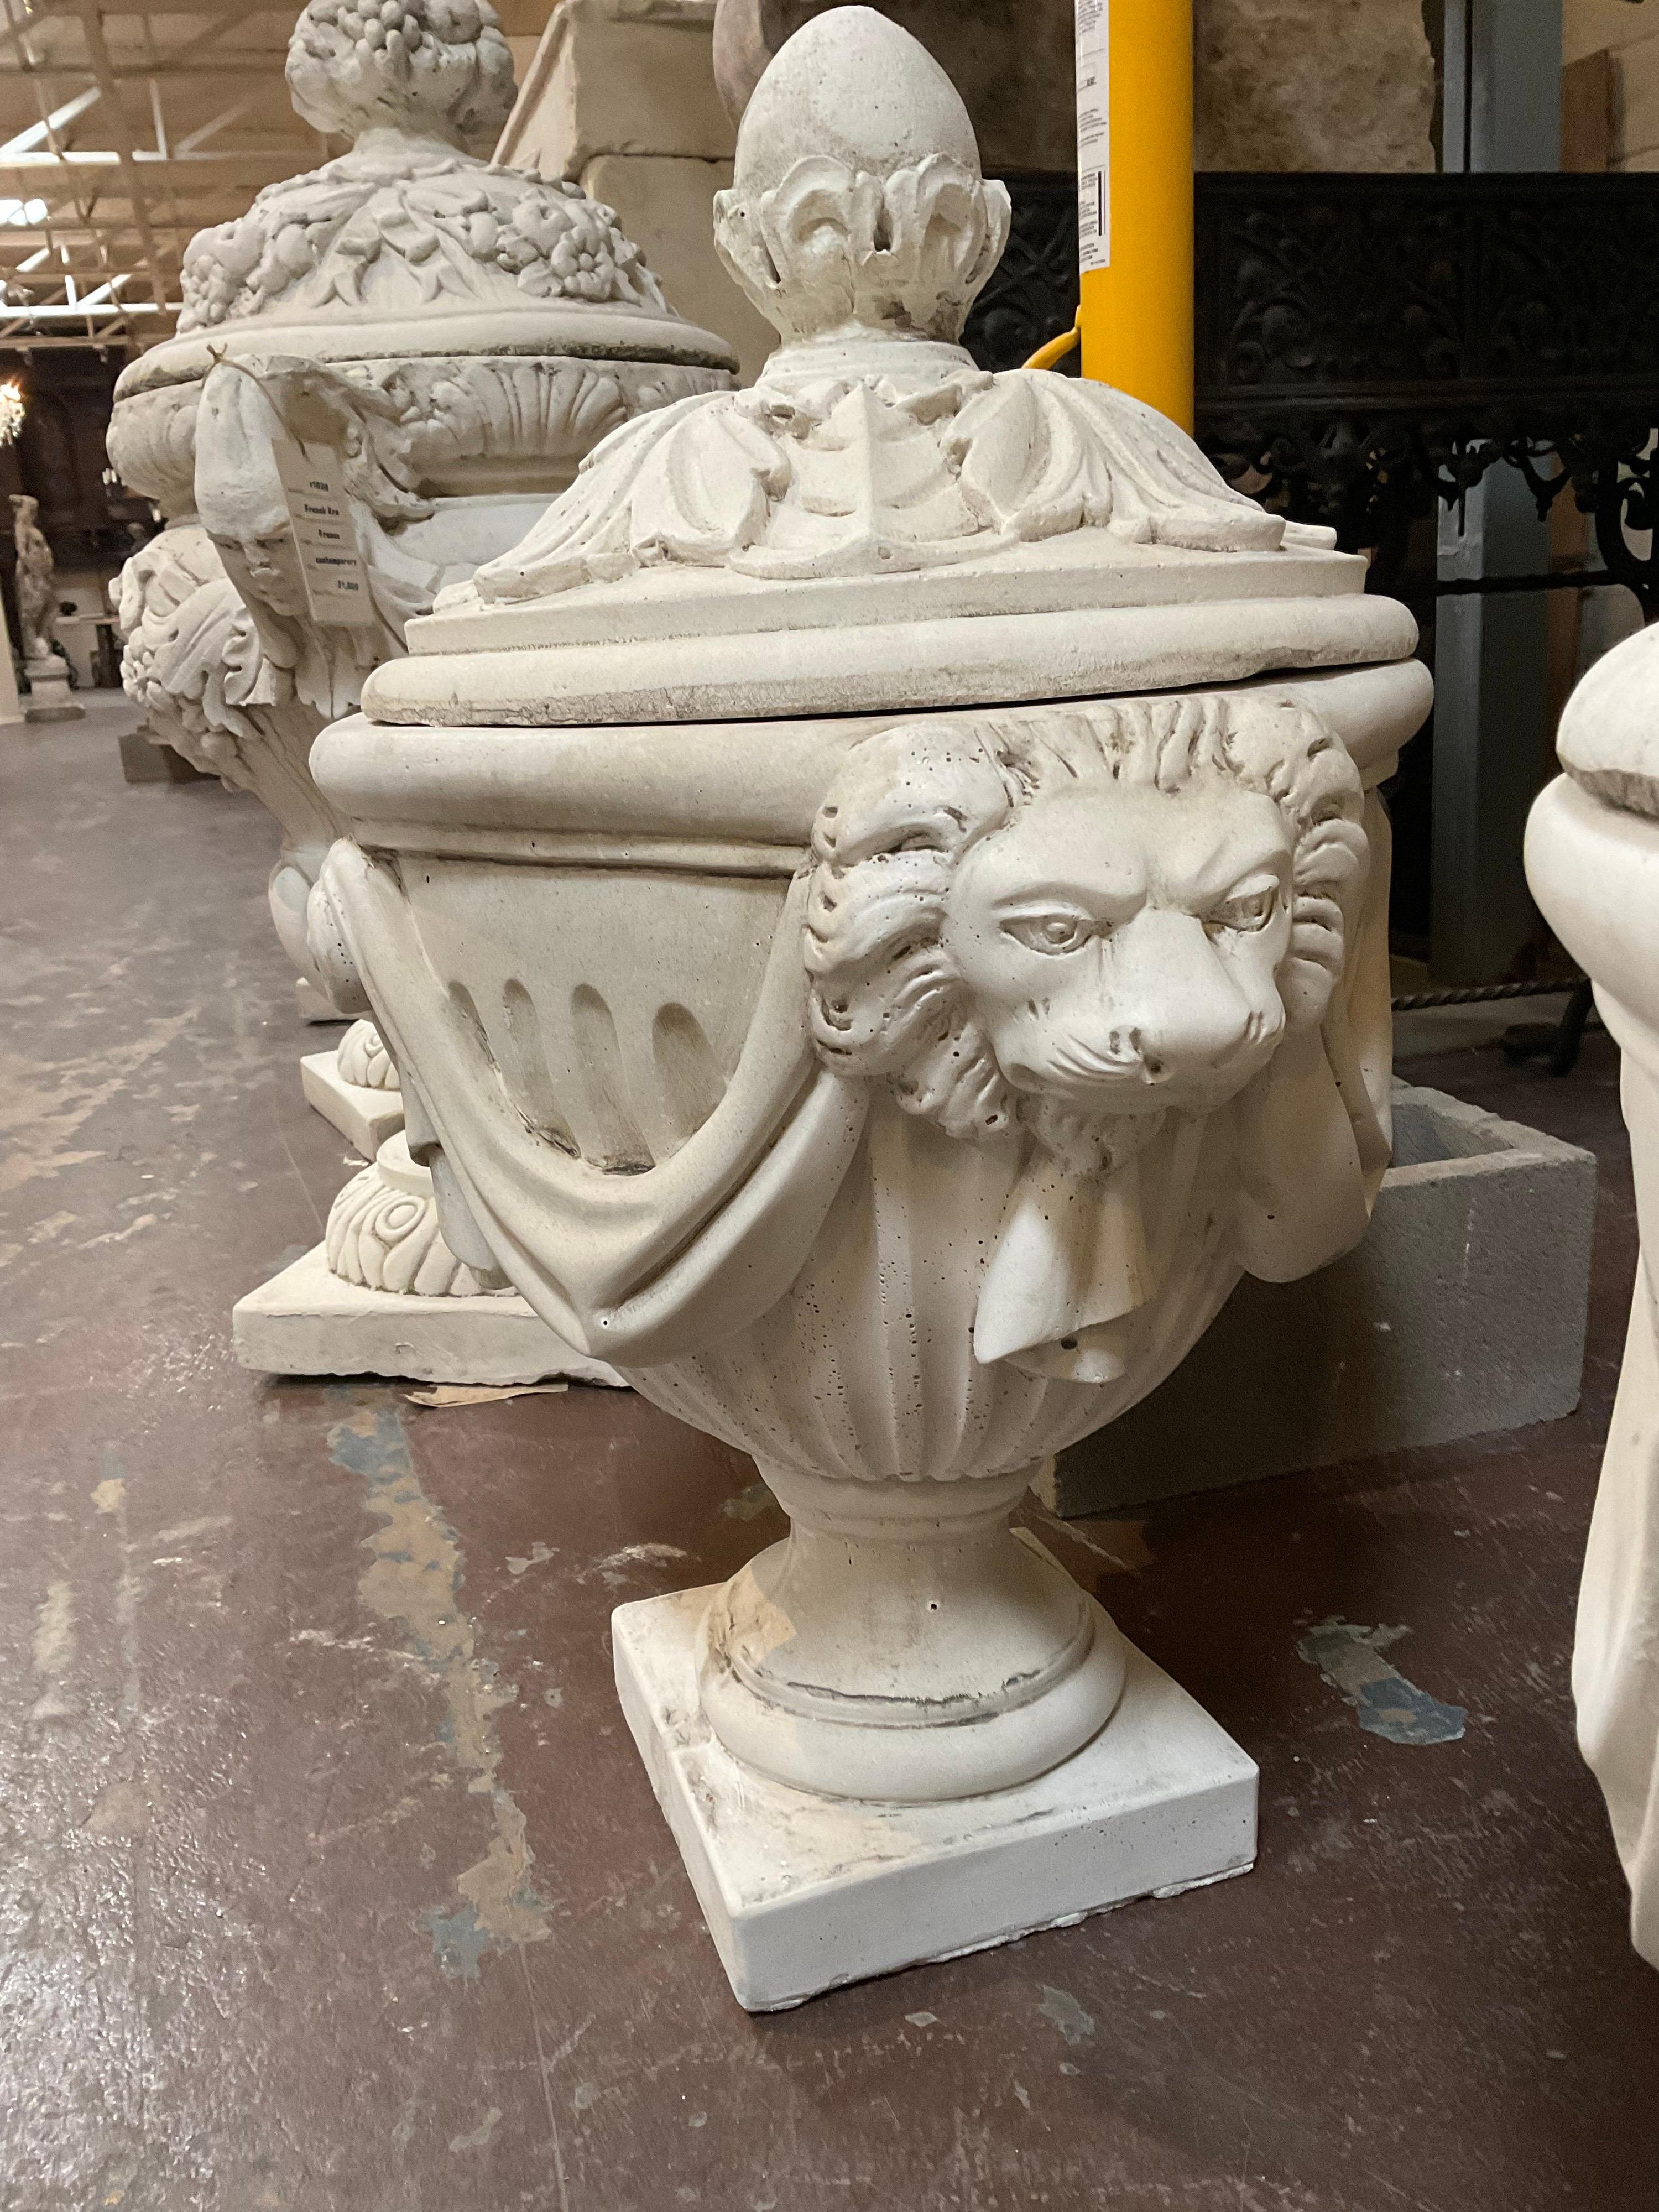 Impressionnante urne contemporaine en forme de lion avec couvercle inclus dans l'achat.